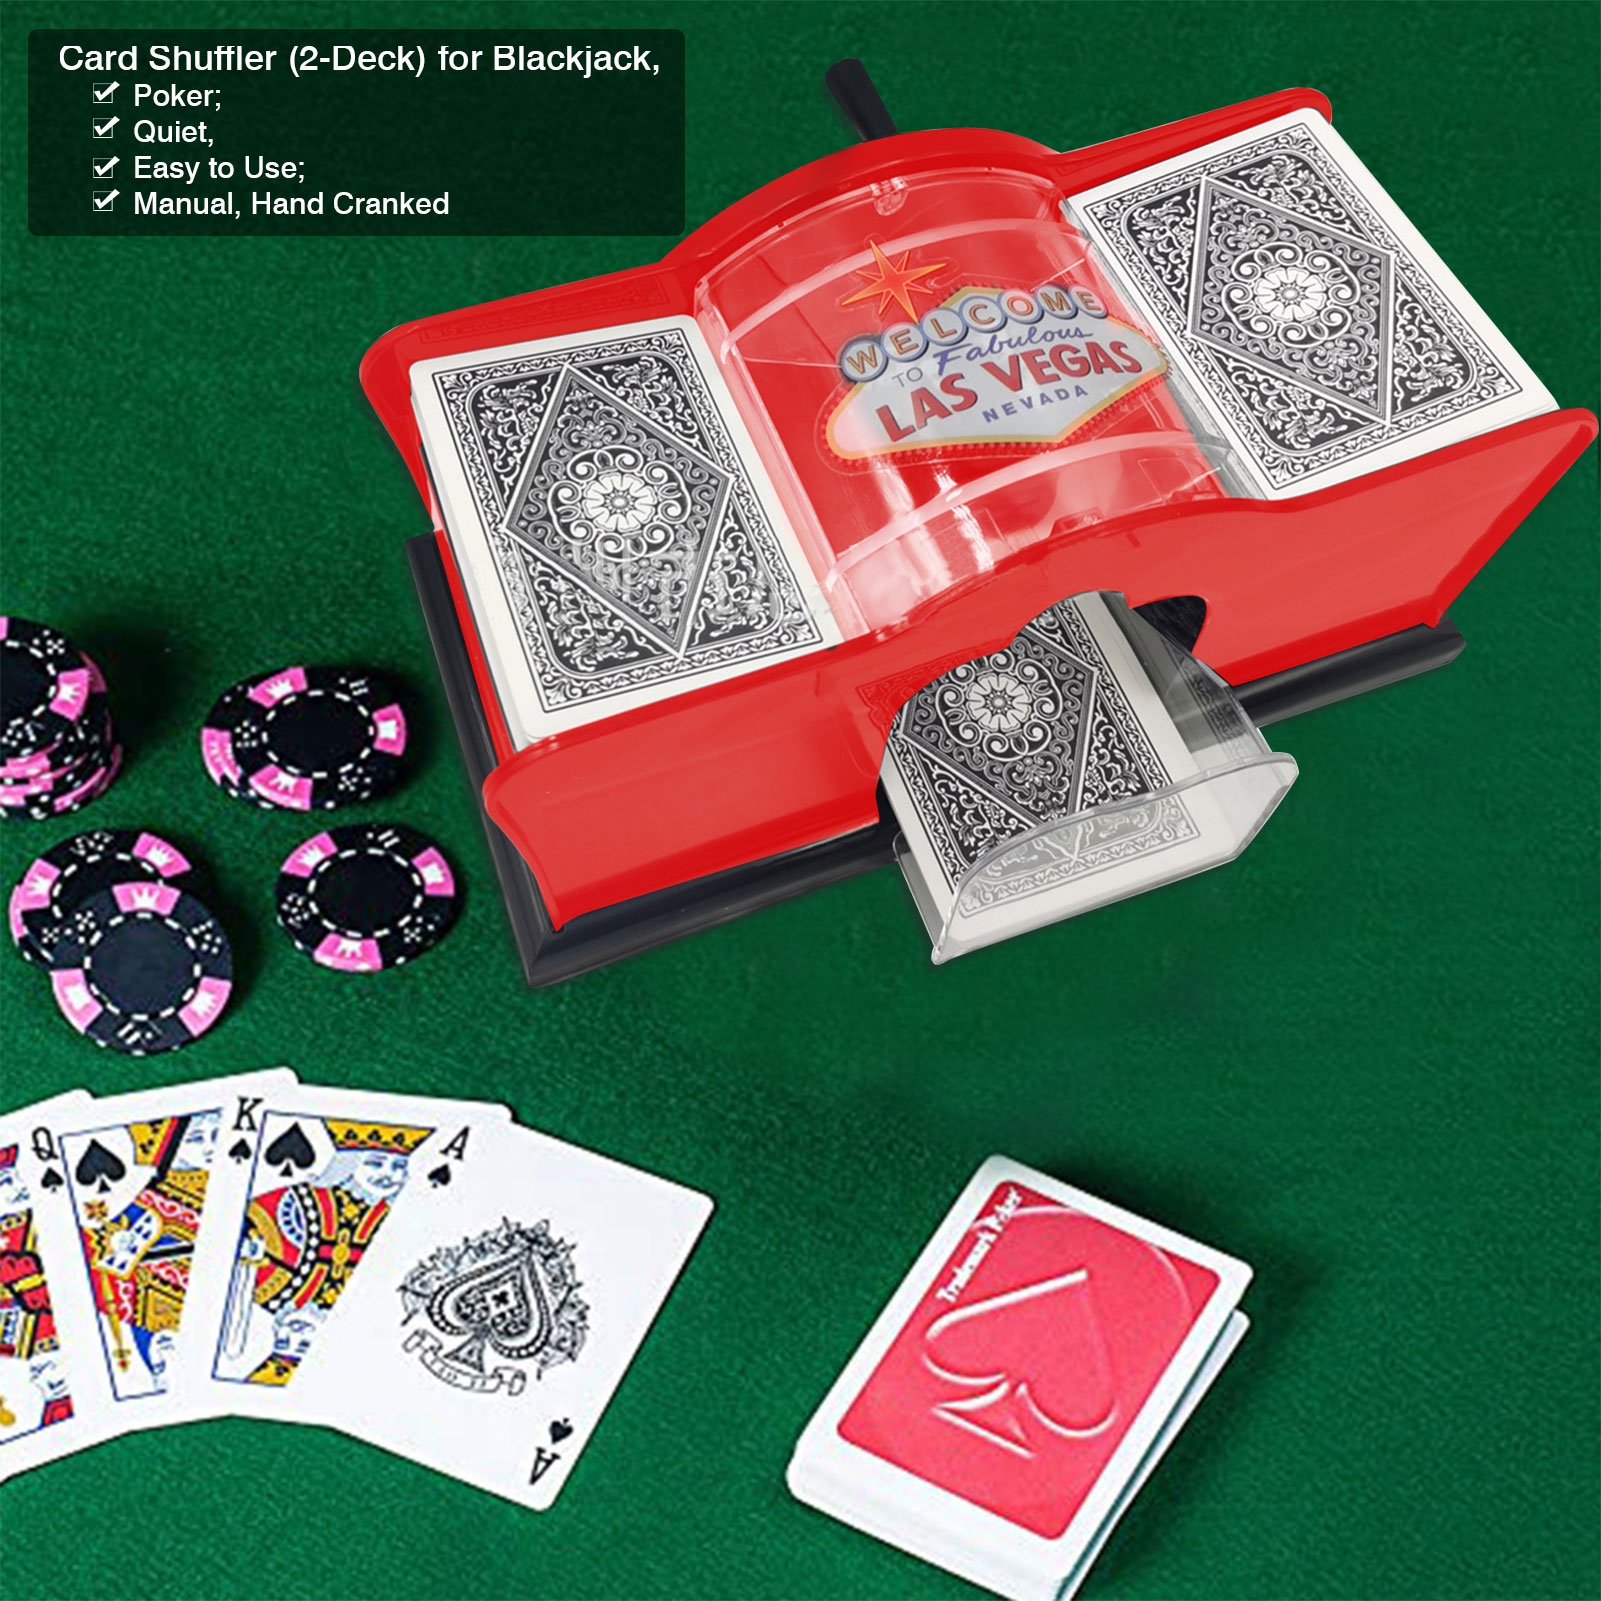 Plastic Hand Cranked Card Shuffler 2 Deck Card Shuffler Manual Card-shuffling Tool Board Games Card Games Shuffling